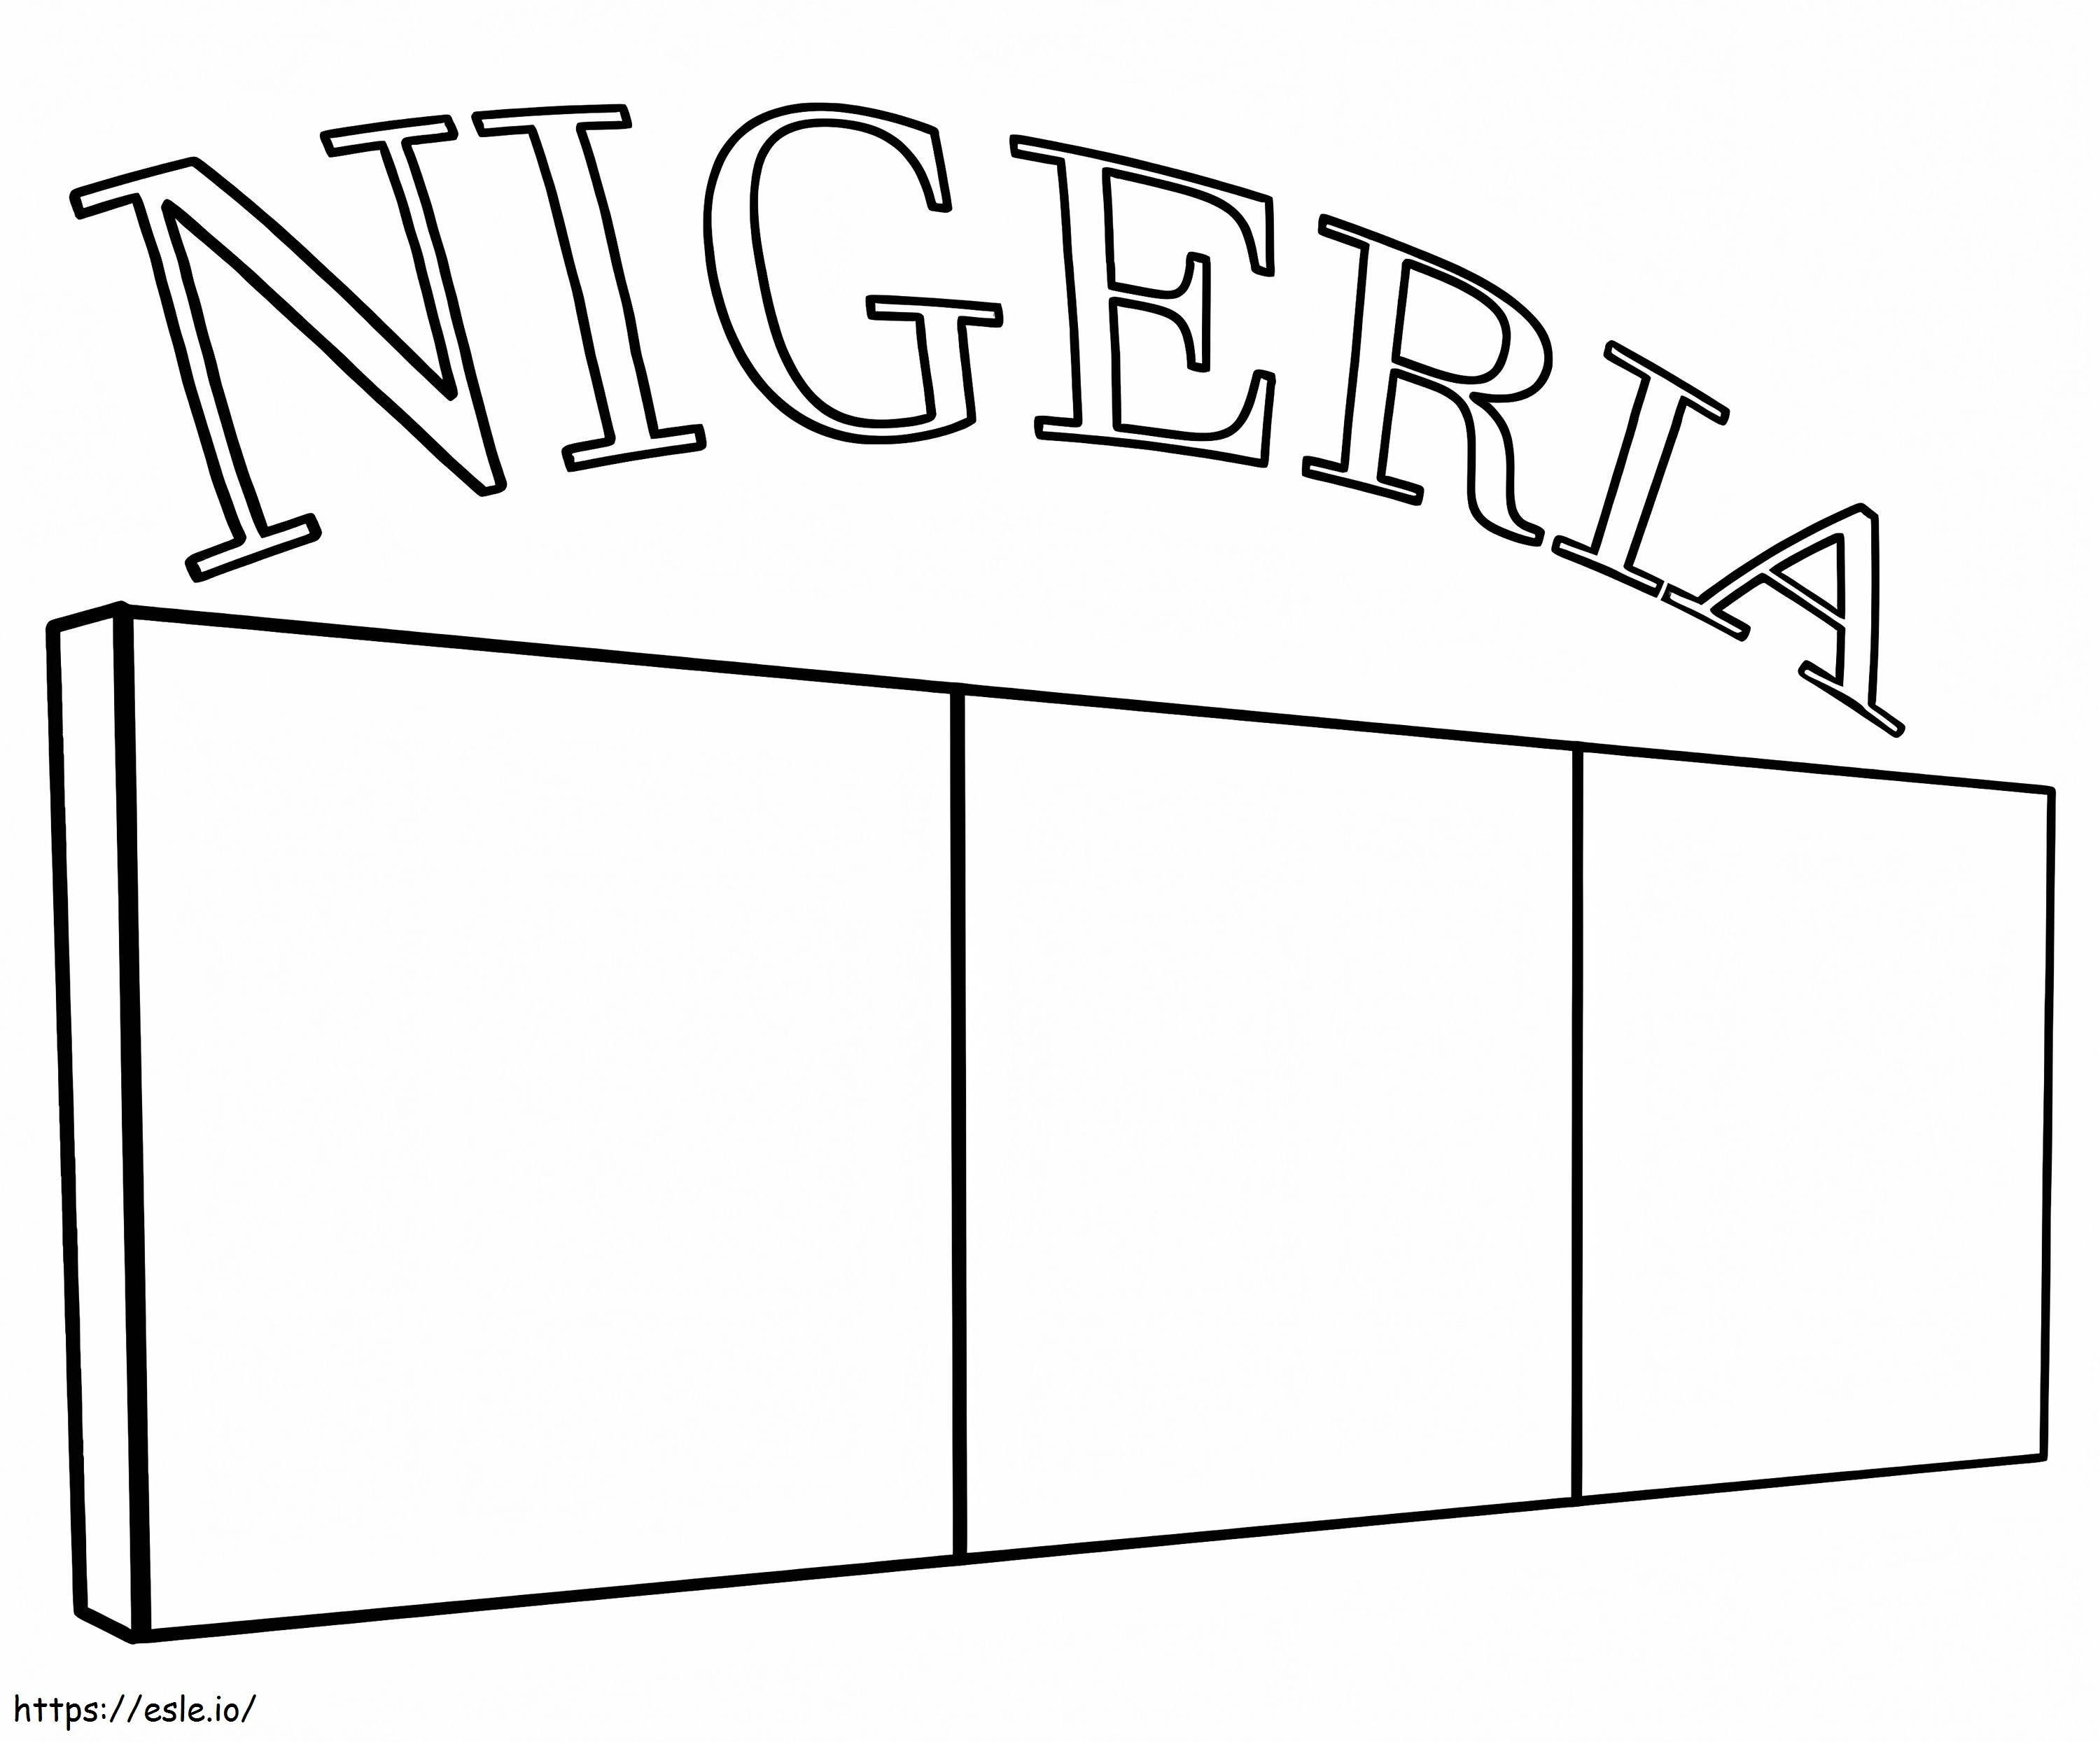 Bandiera della Nigeria da colorare